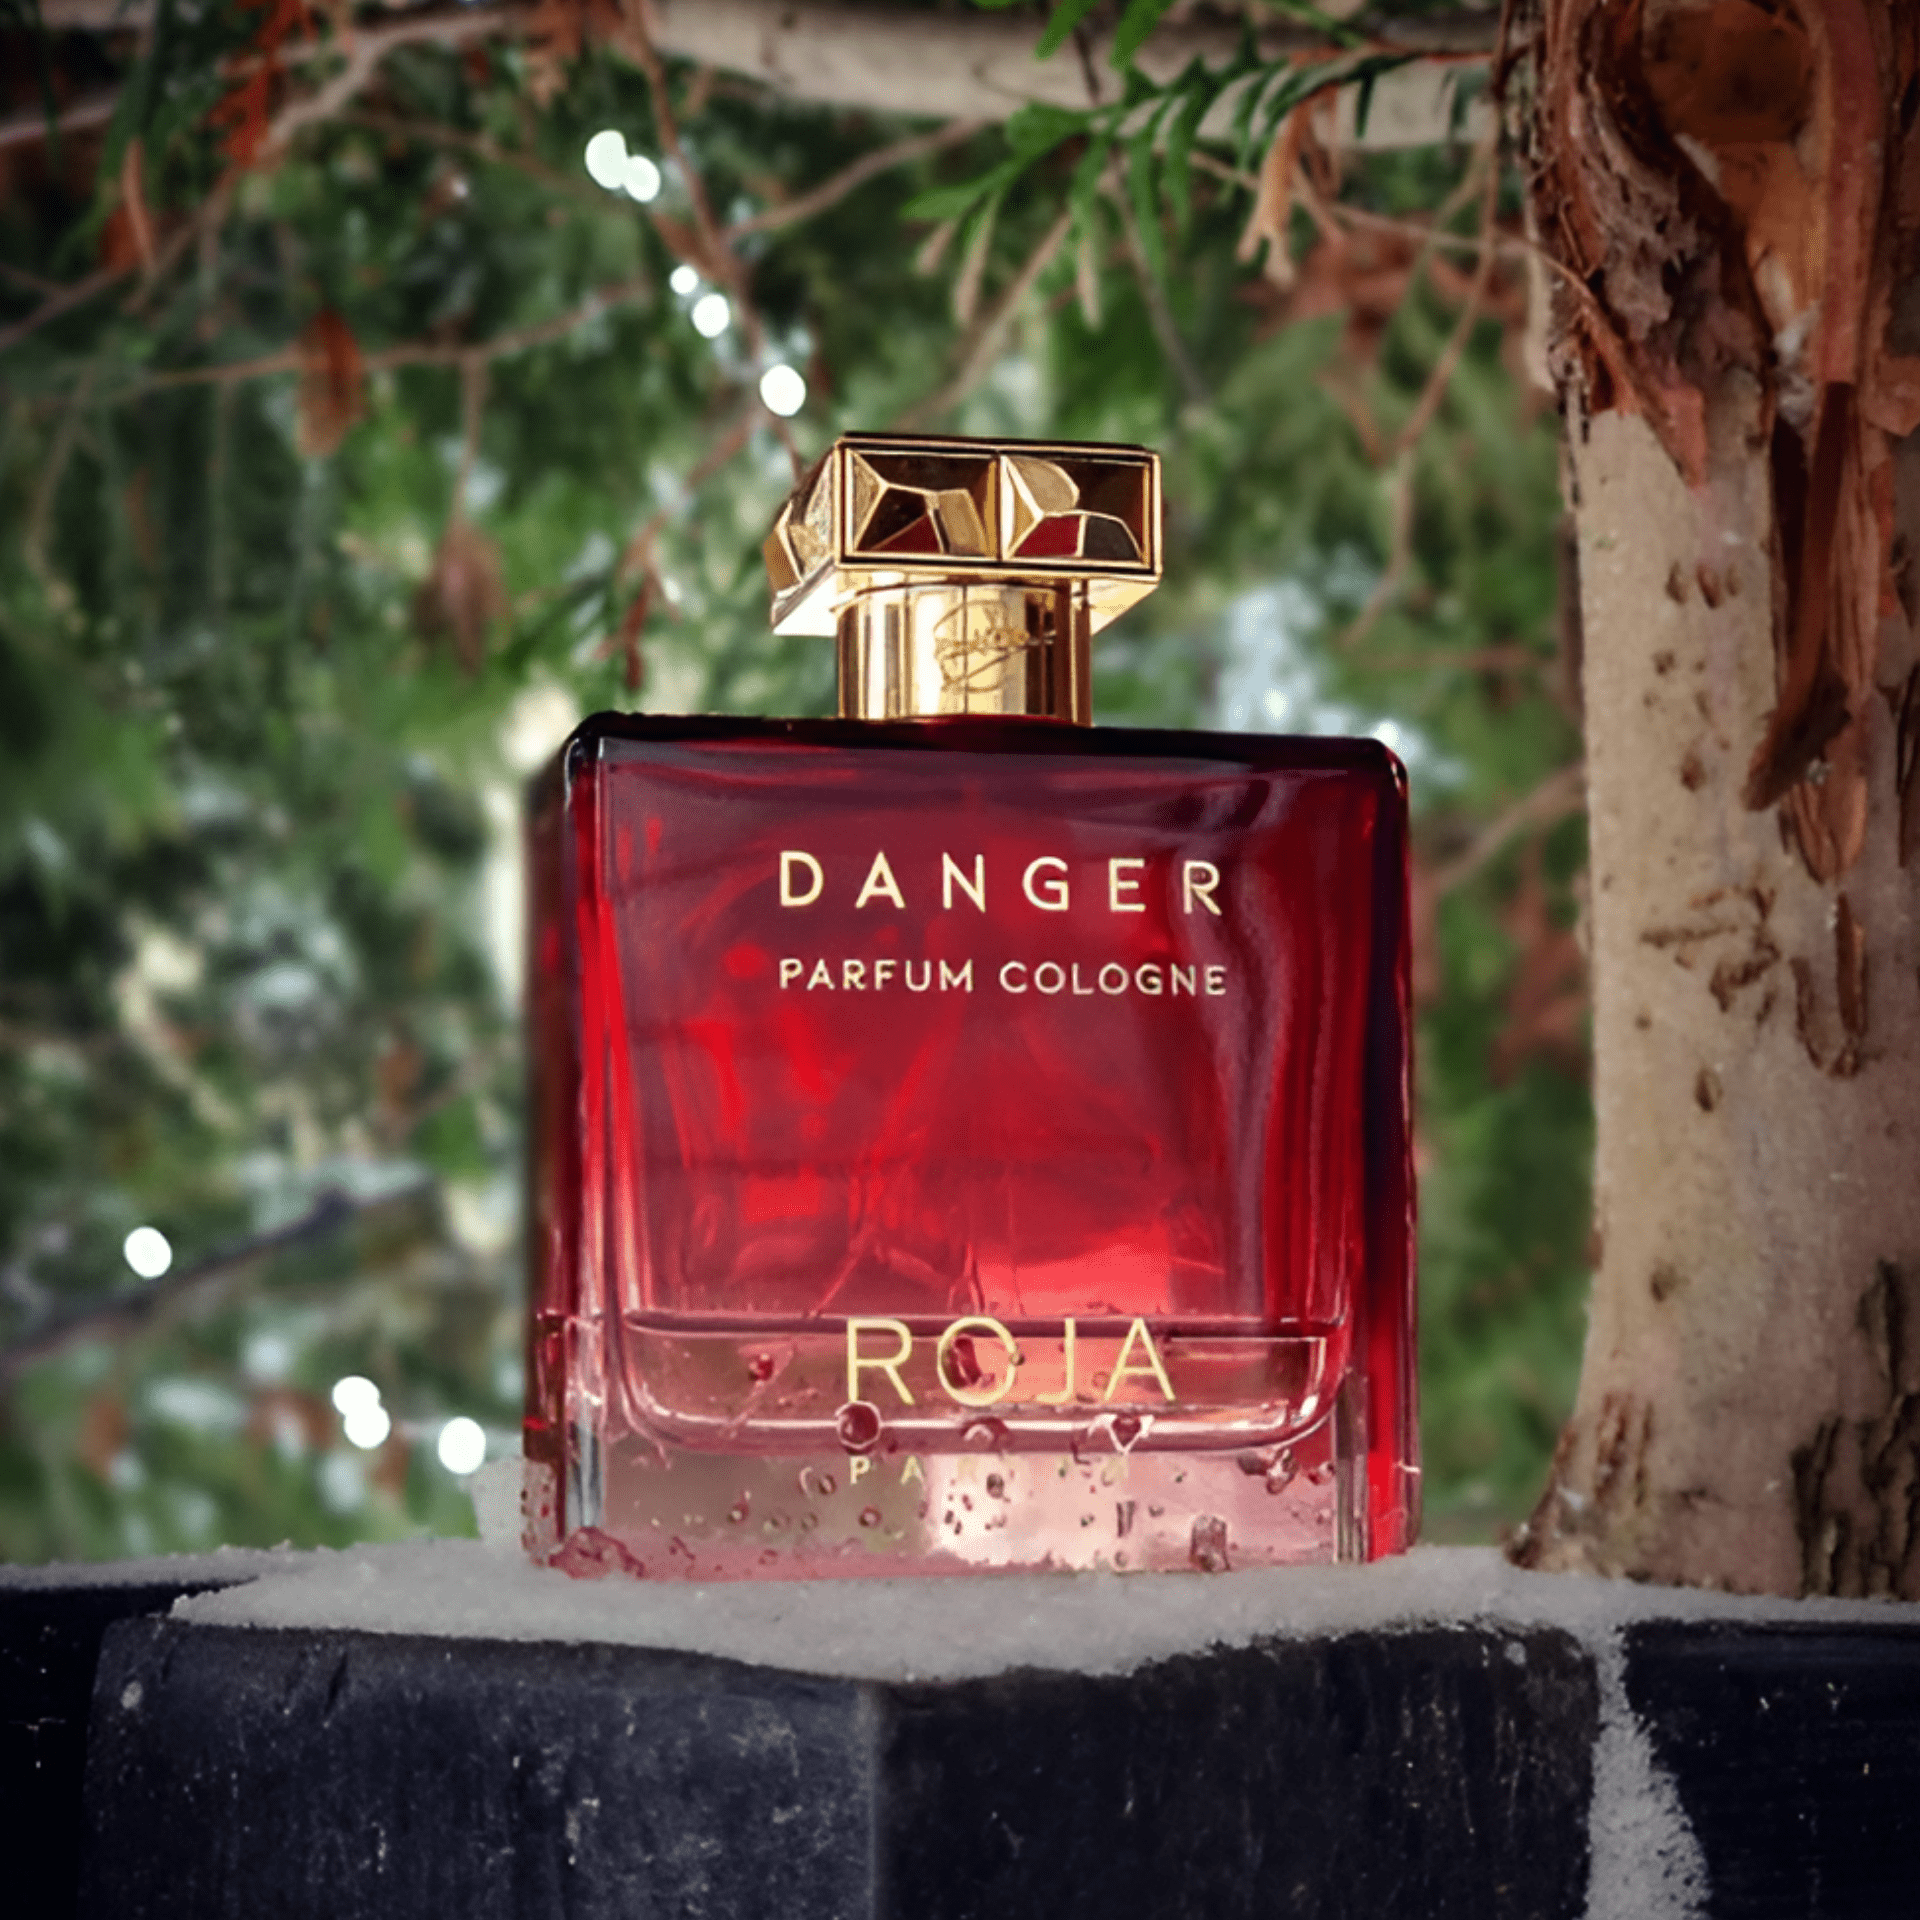 Roja Parfums Danger Pour Homme Parfum | My Perfume Shop Australia